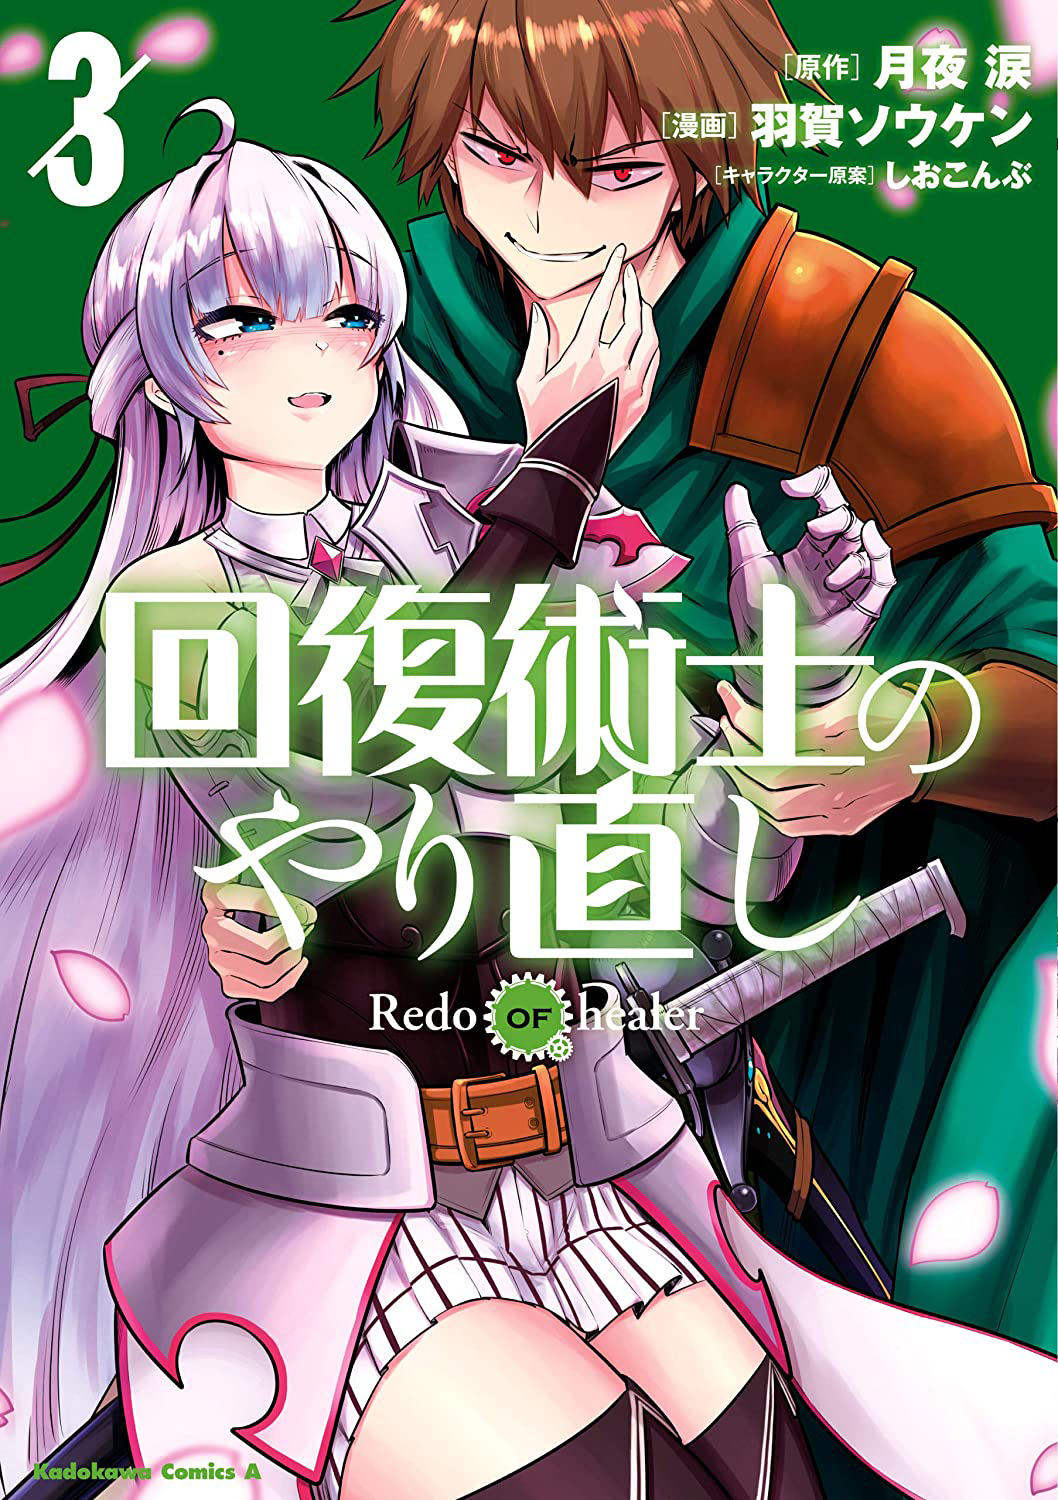 Redo Of The Healer Manga Manga Volume 3 | Kaifuku Jutsushi no Yarinaoshi Wiki | Fandom